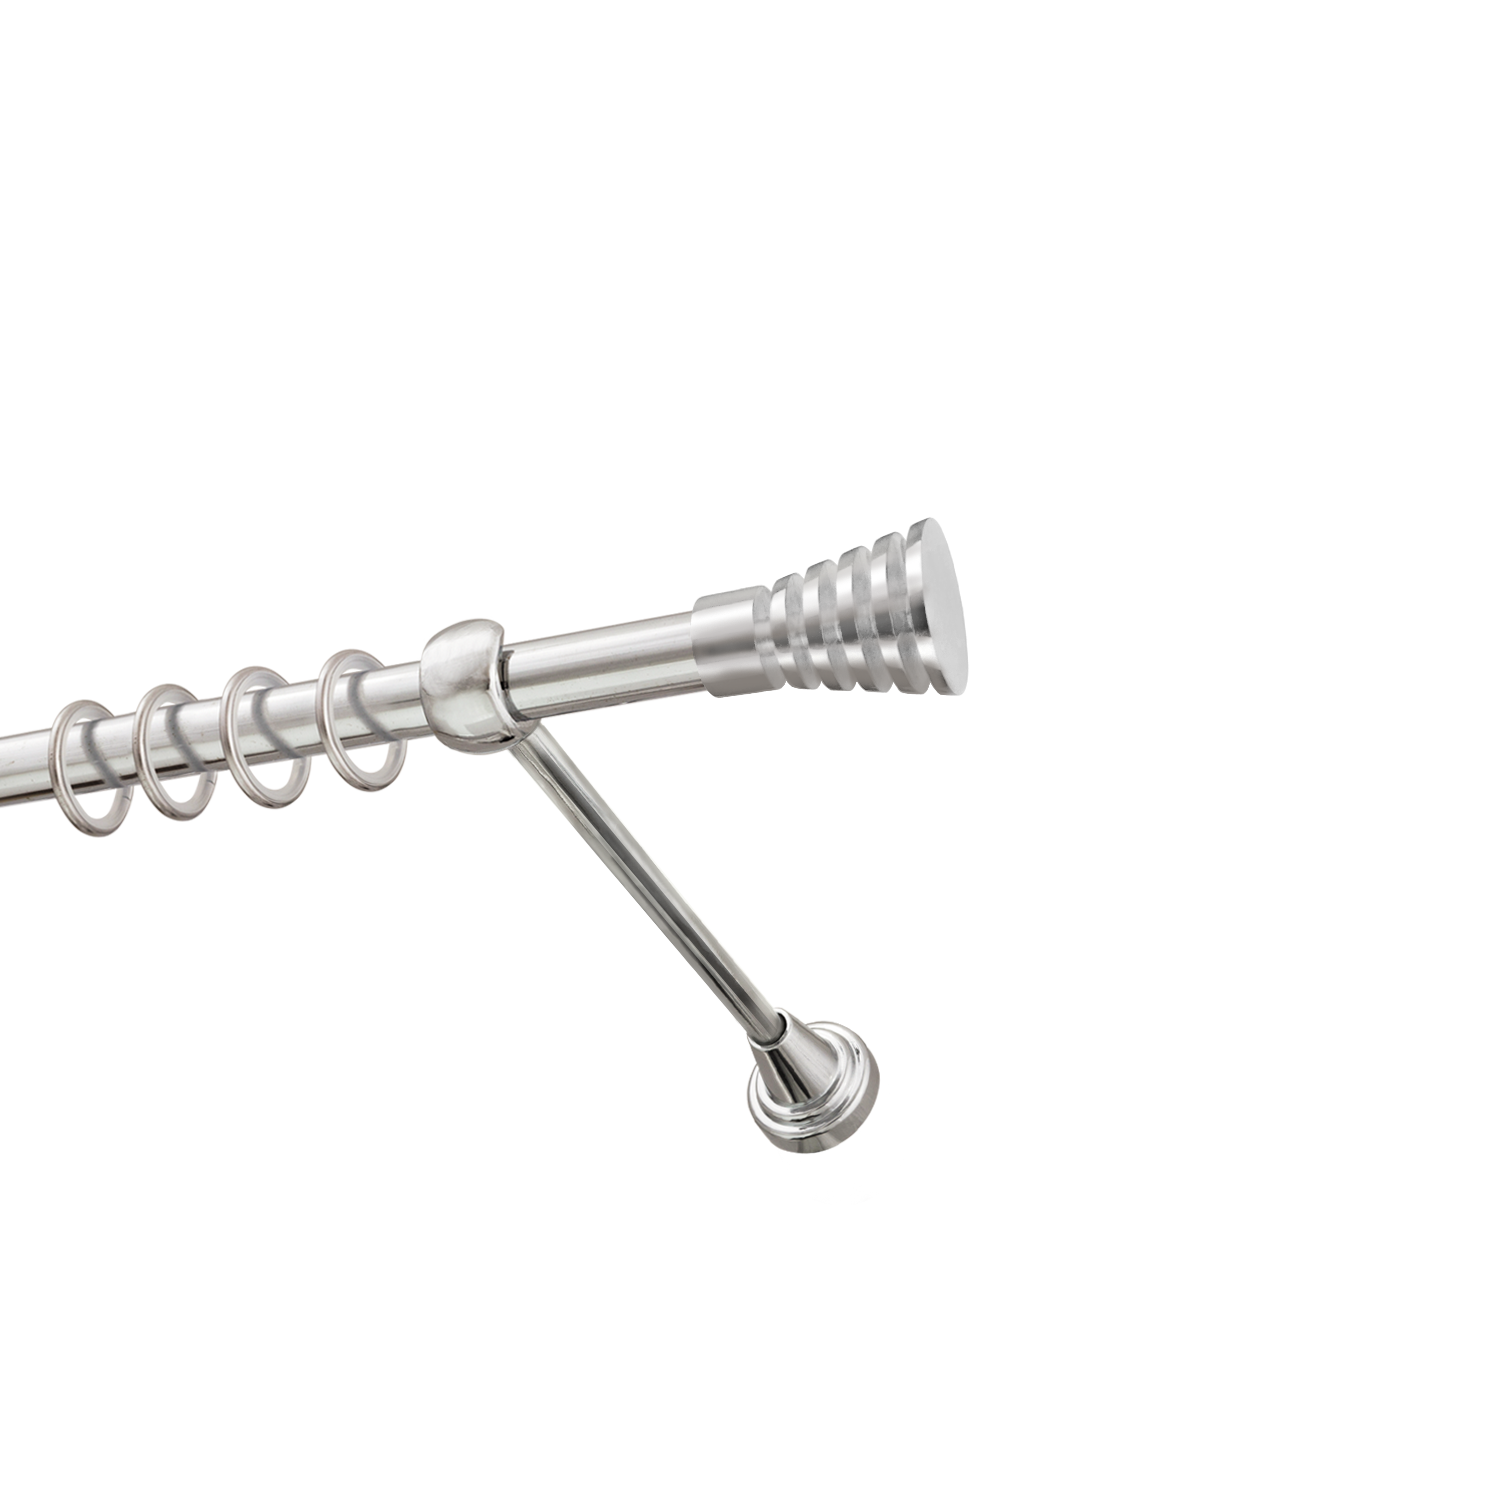 Металлический карниз для штор Верона, однорядный 16 мм, серебро, гладкая штанга, длина 140 см - фото Wikidecor.ru